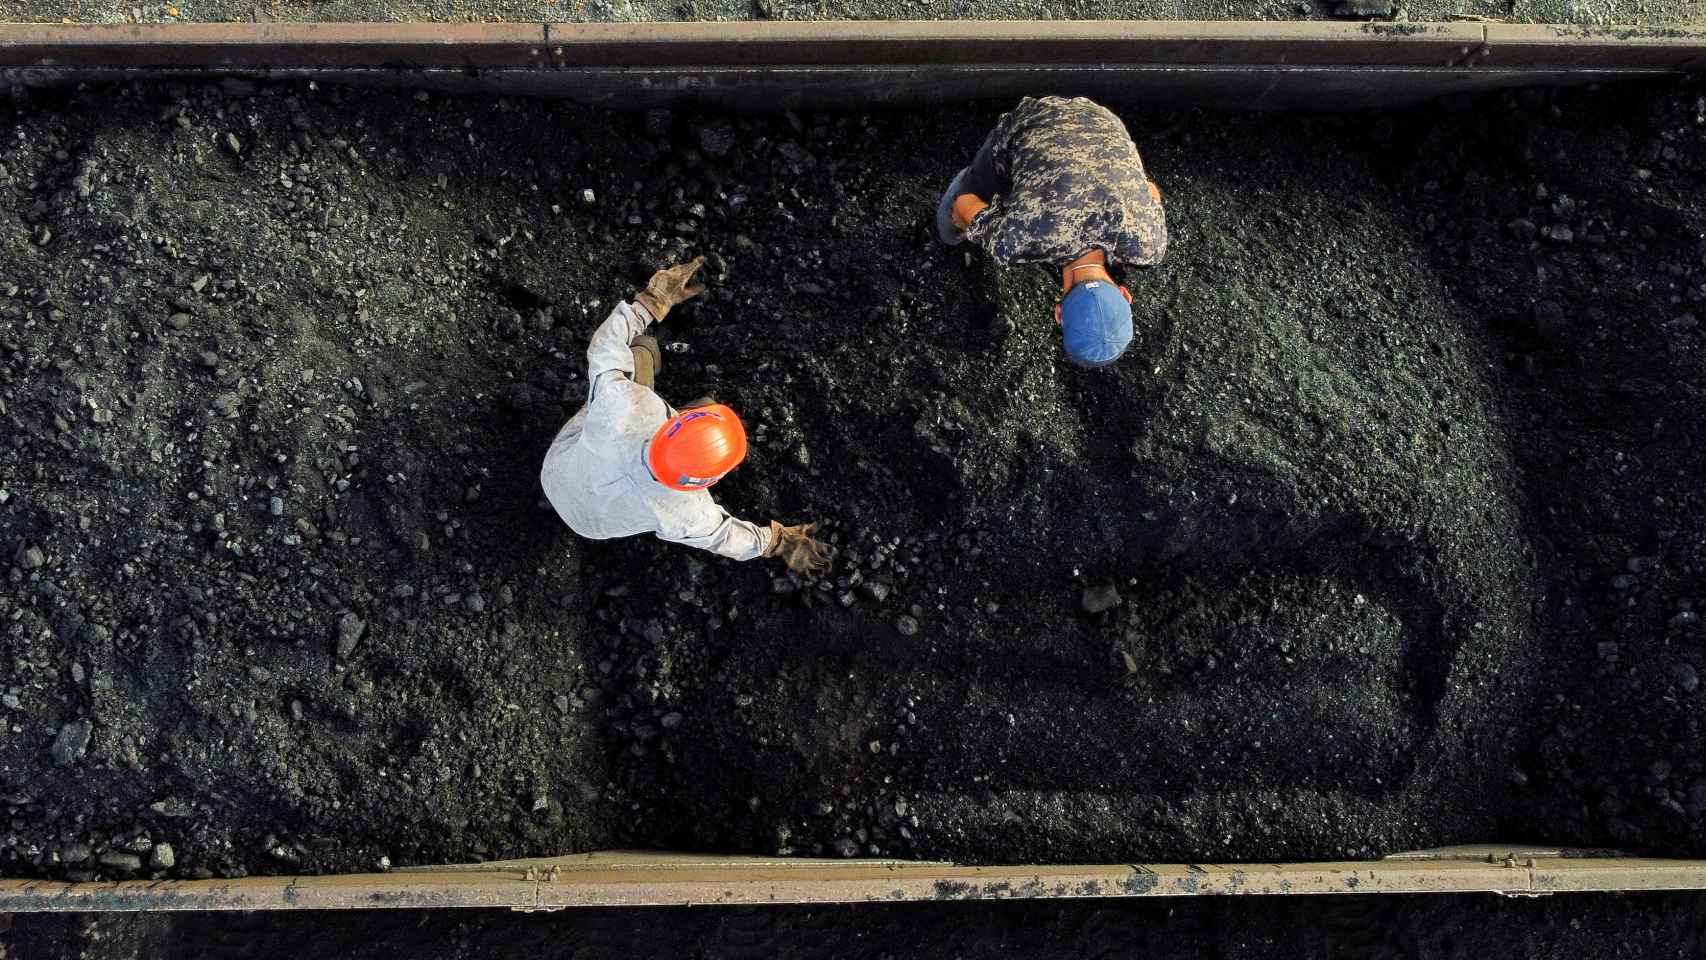 Dos mineros separan piedras del carbón antes de transportarlo a una mina, en México.